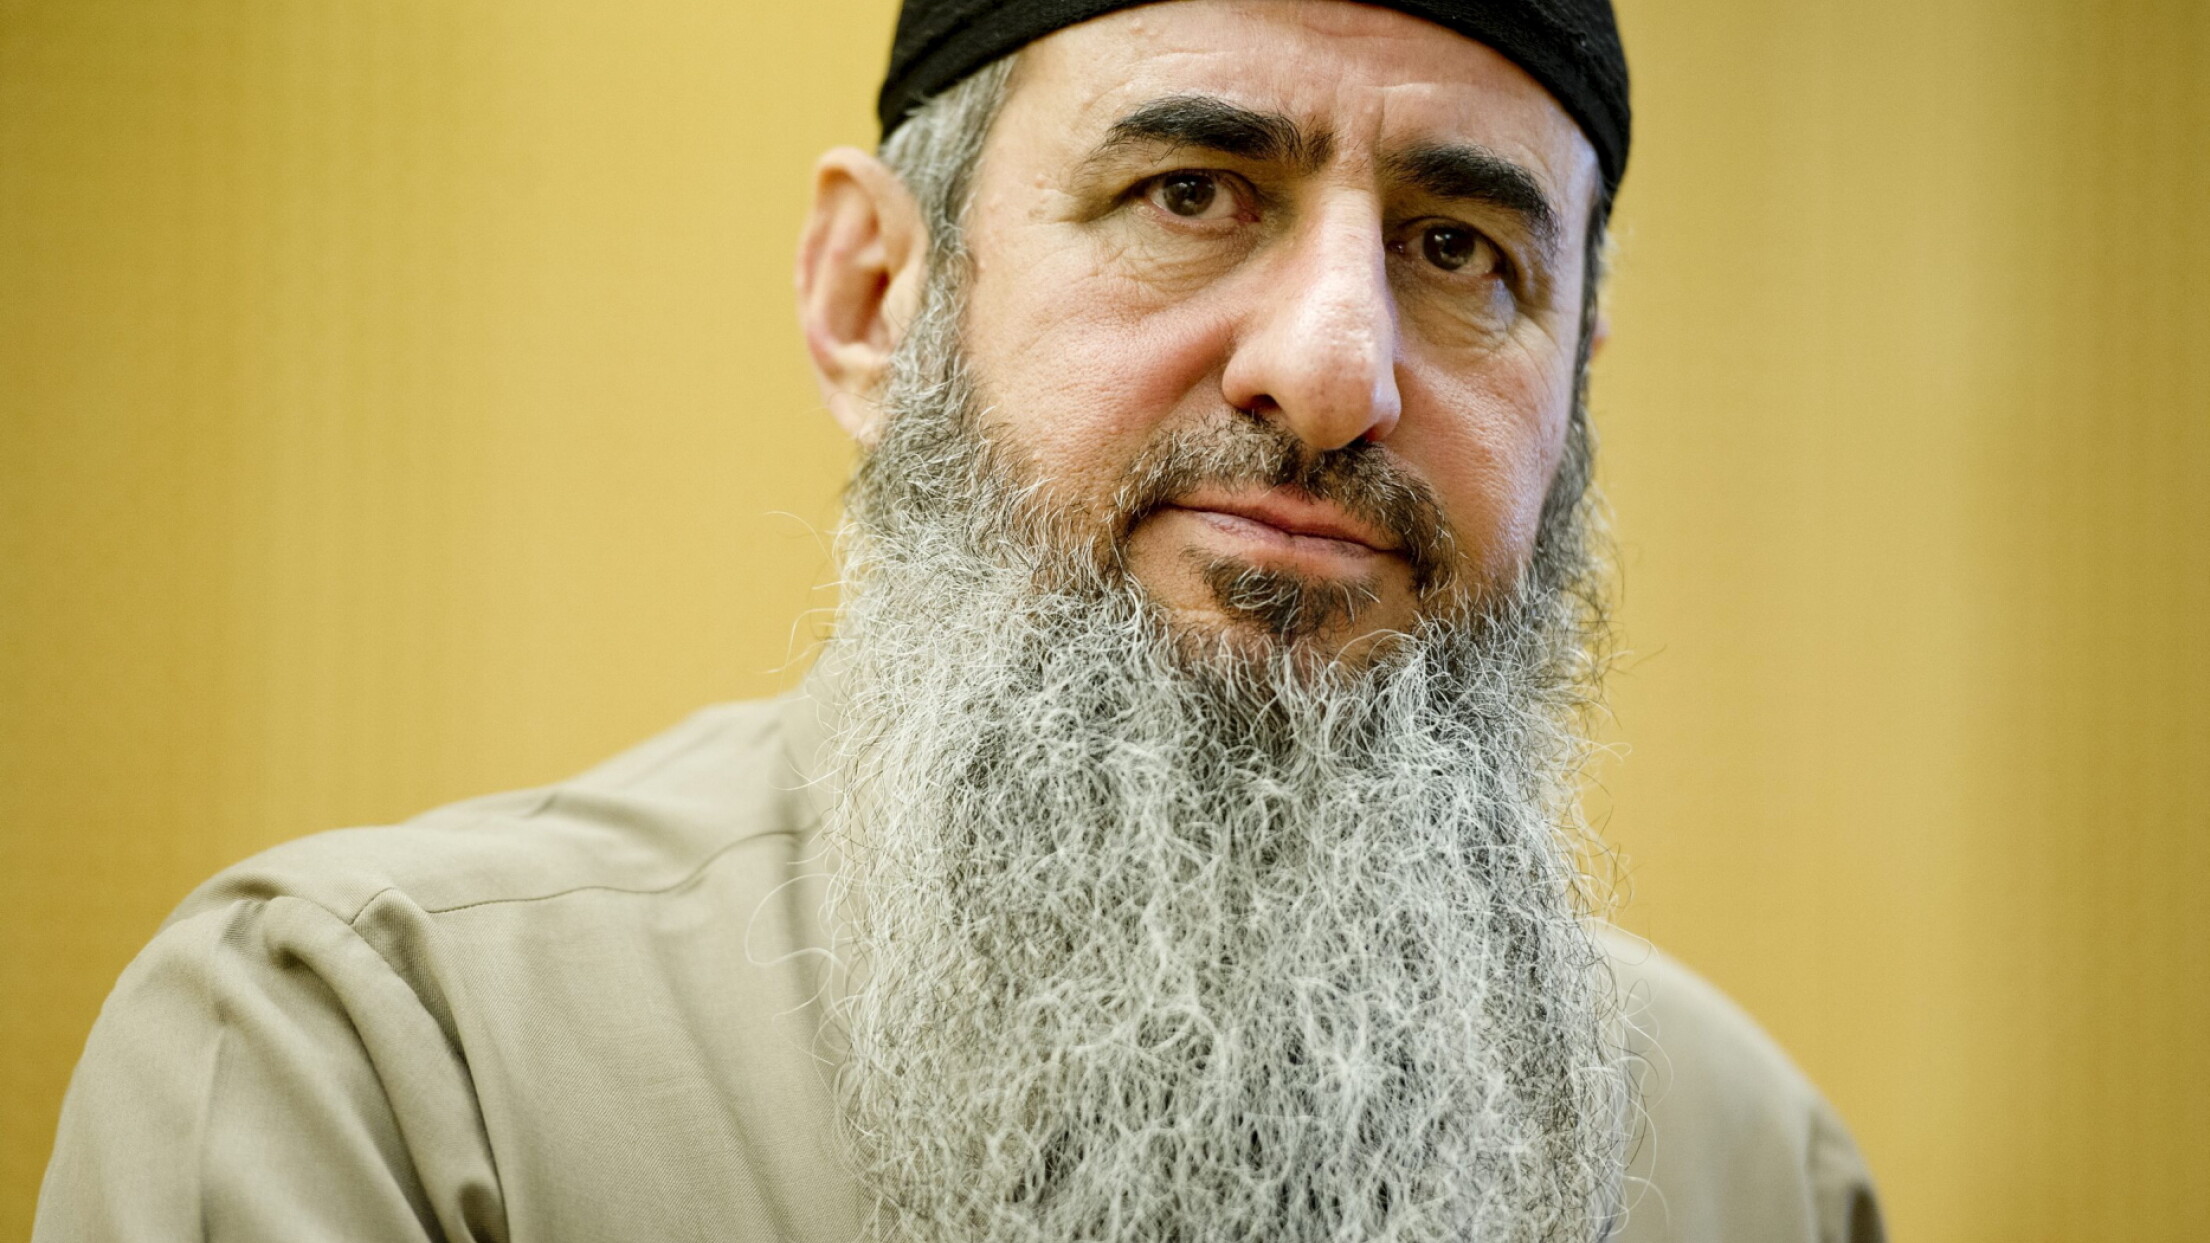 Norsk mullah taber ankesag om udlevering for terroranklage - DR - DR